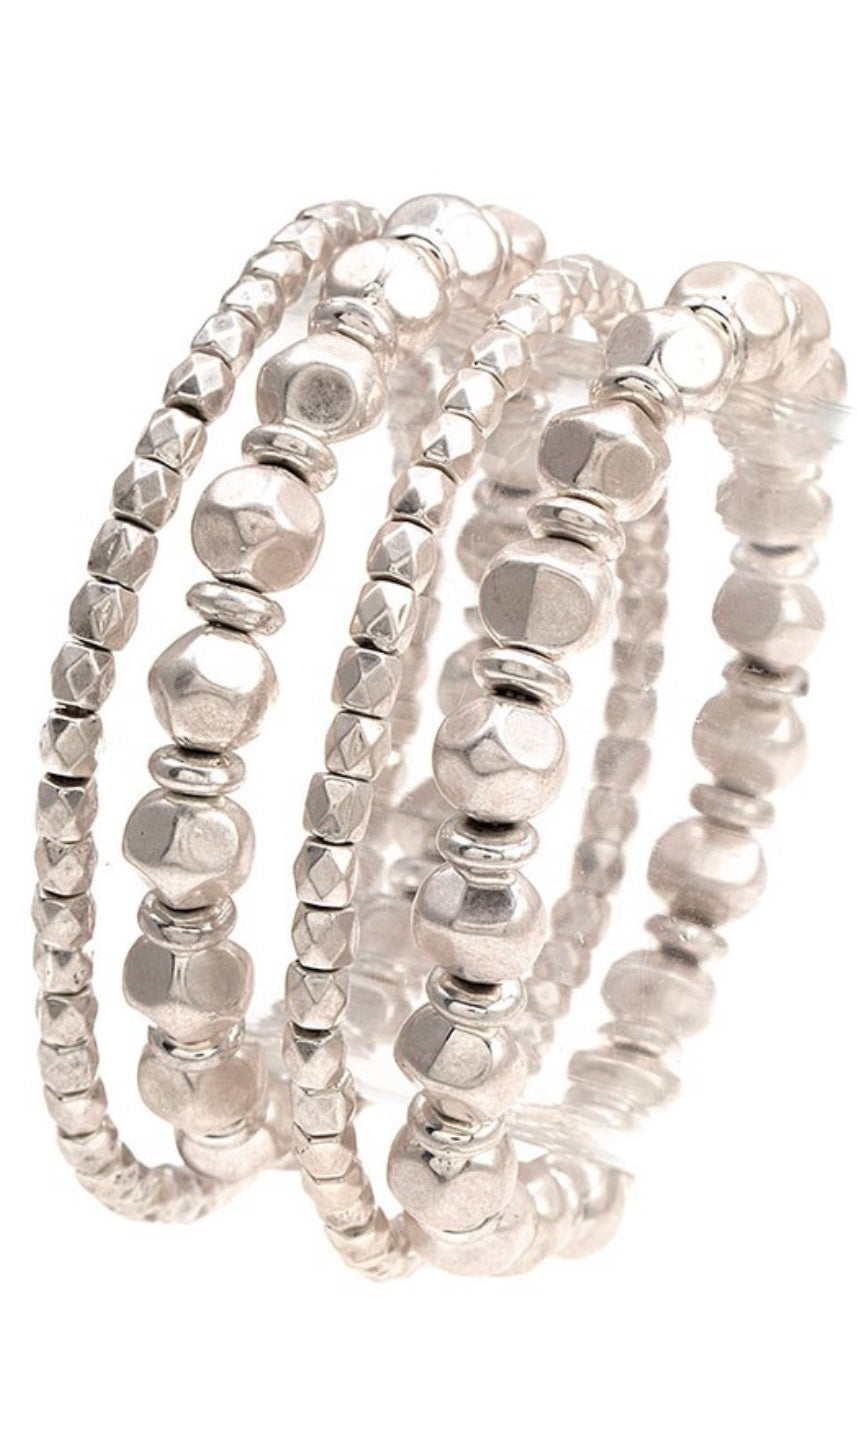 Bracelet Fashion Hammered Silver Stacked Bracelet Set